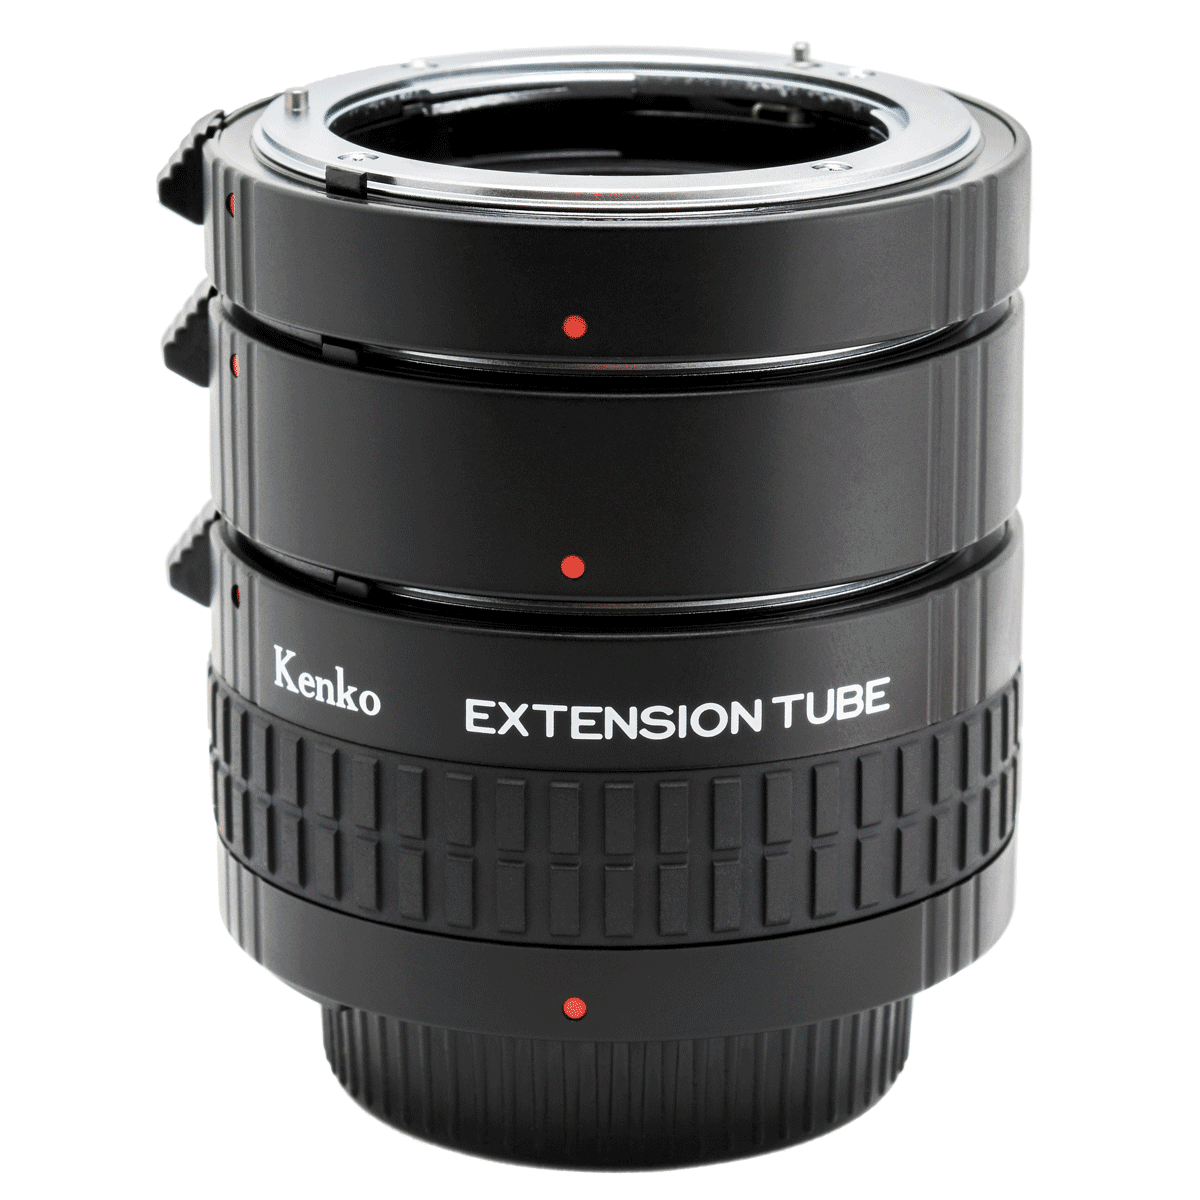 Kenko Auto Extension Tube Set DG for Nikon Lens